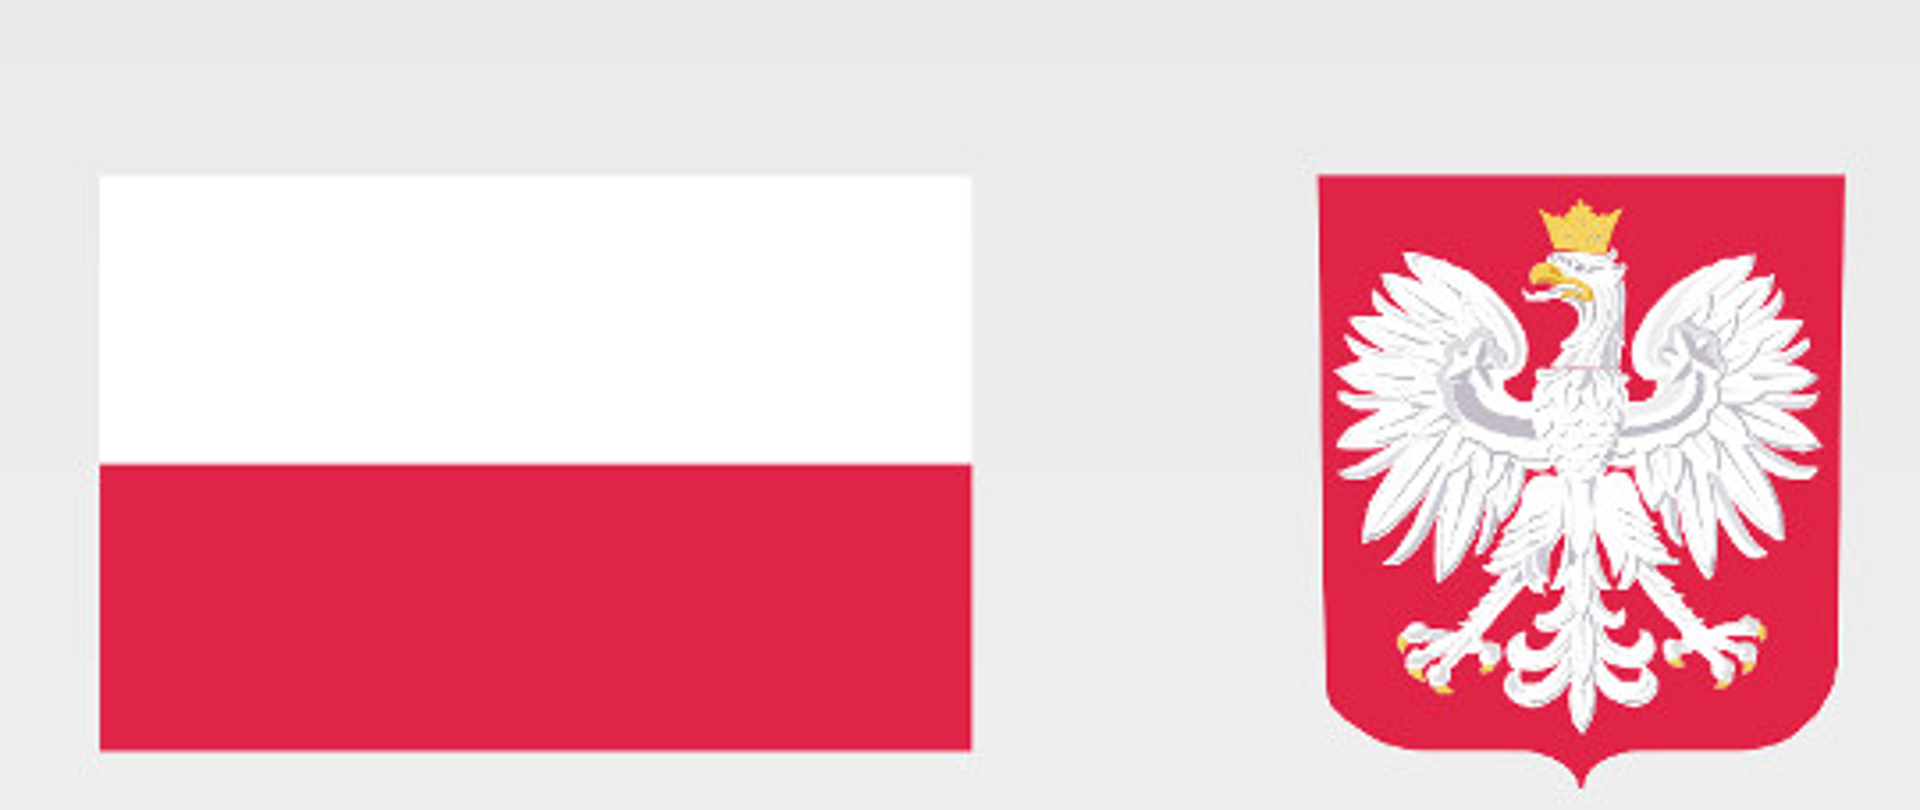 u góry flaga Polski biało-czerwona i godło Polski biały orzeł na czerwonym tle, poniżej informacja o dofinansowaniu, tło szare